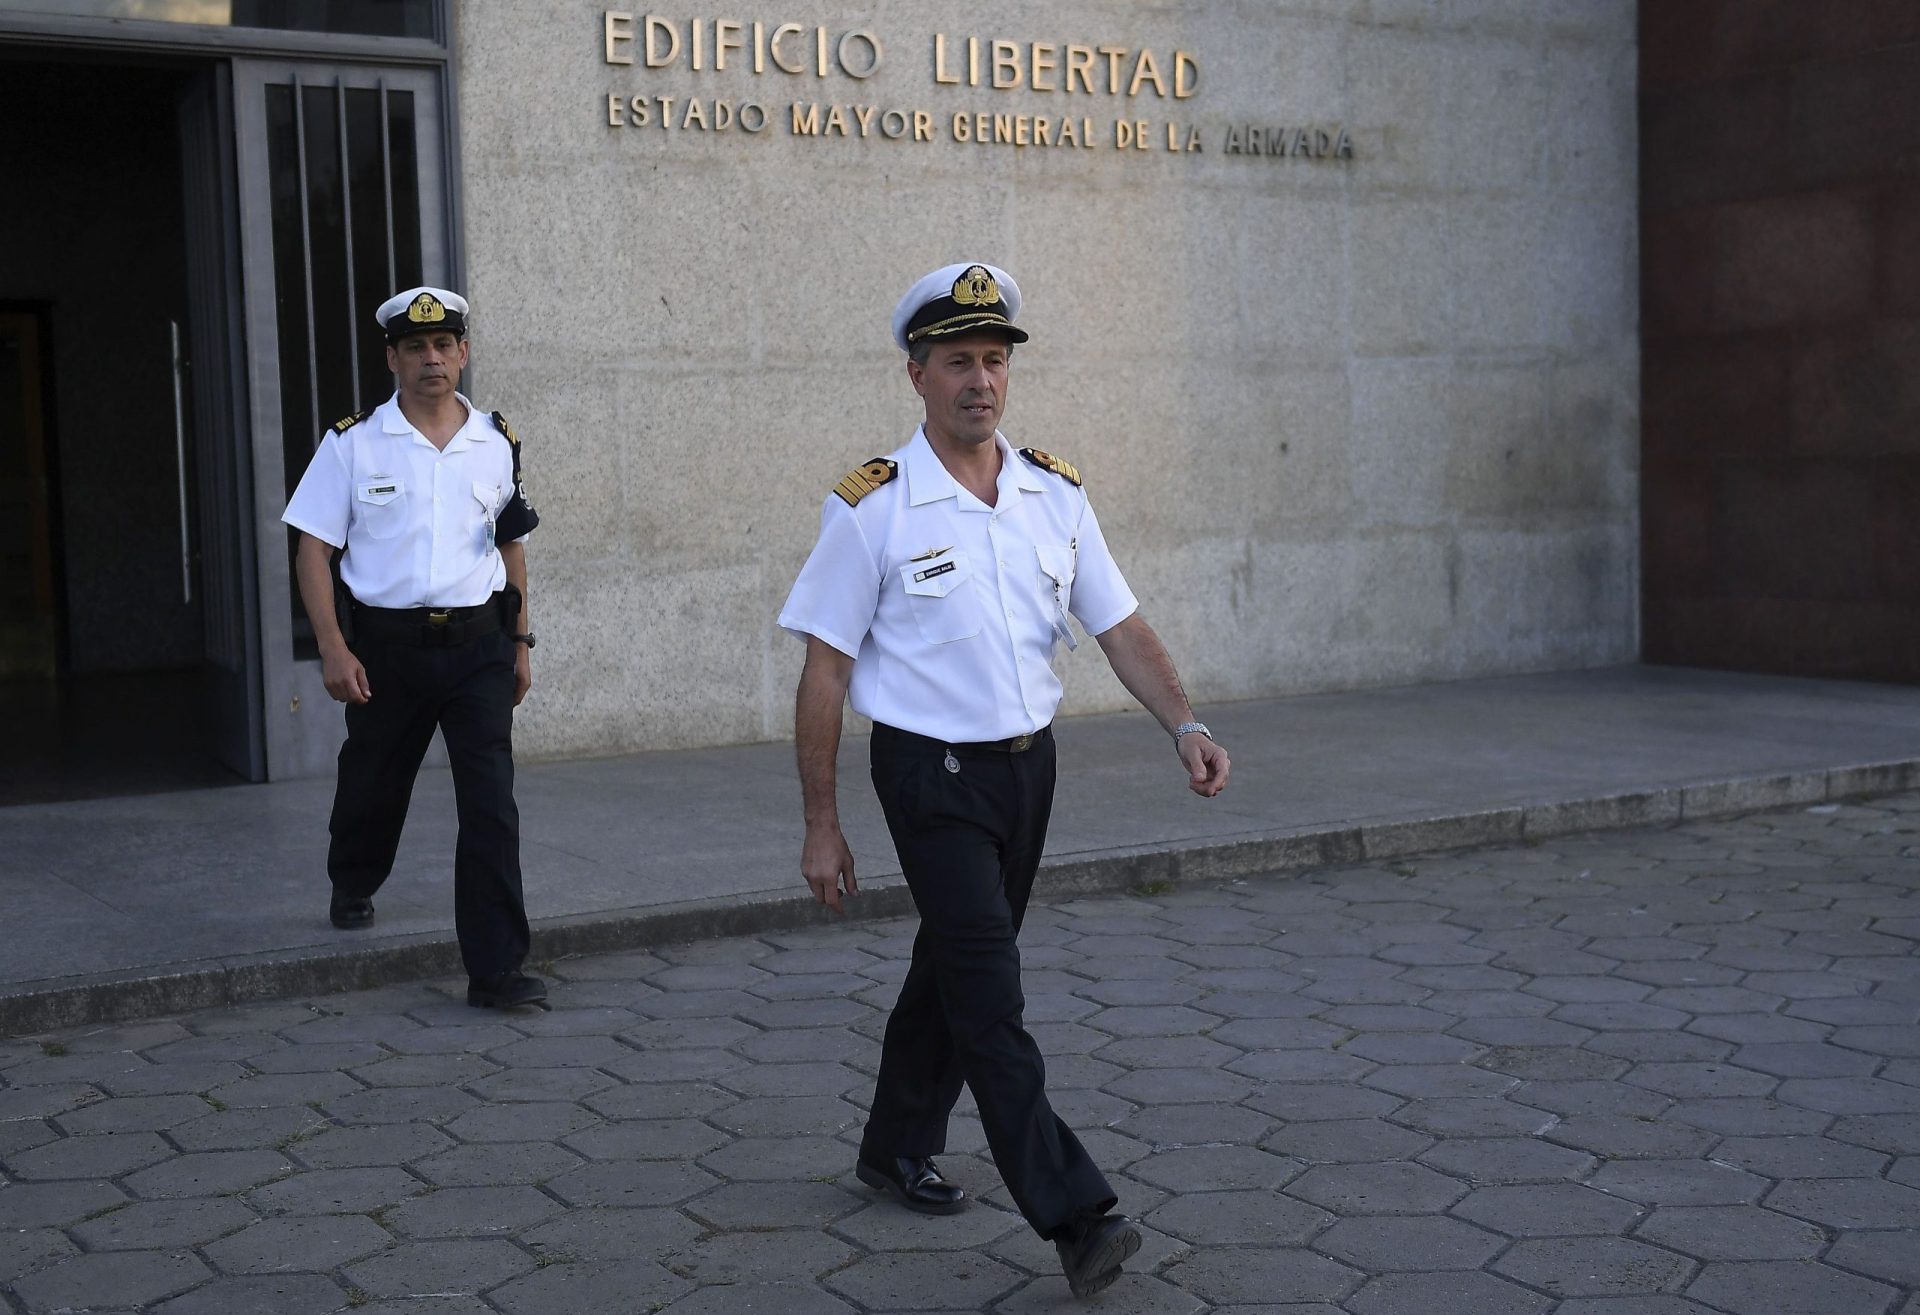 Ouvida explosão no dia do último contacto do submarino, confirmou Marinha argentina